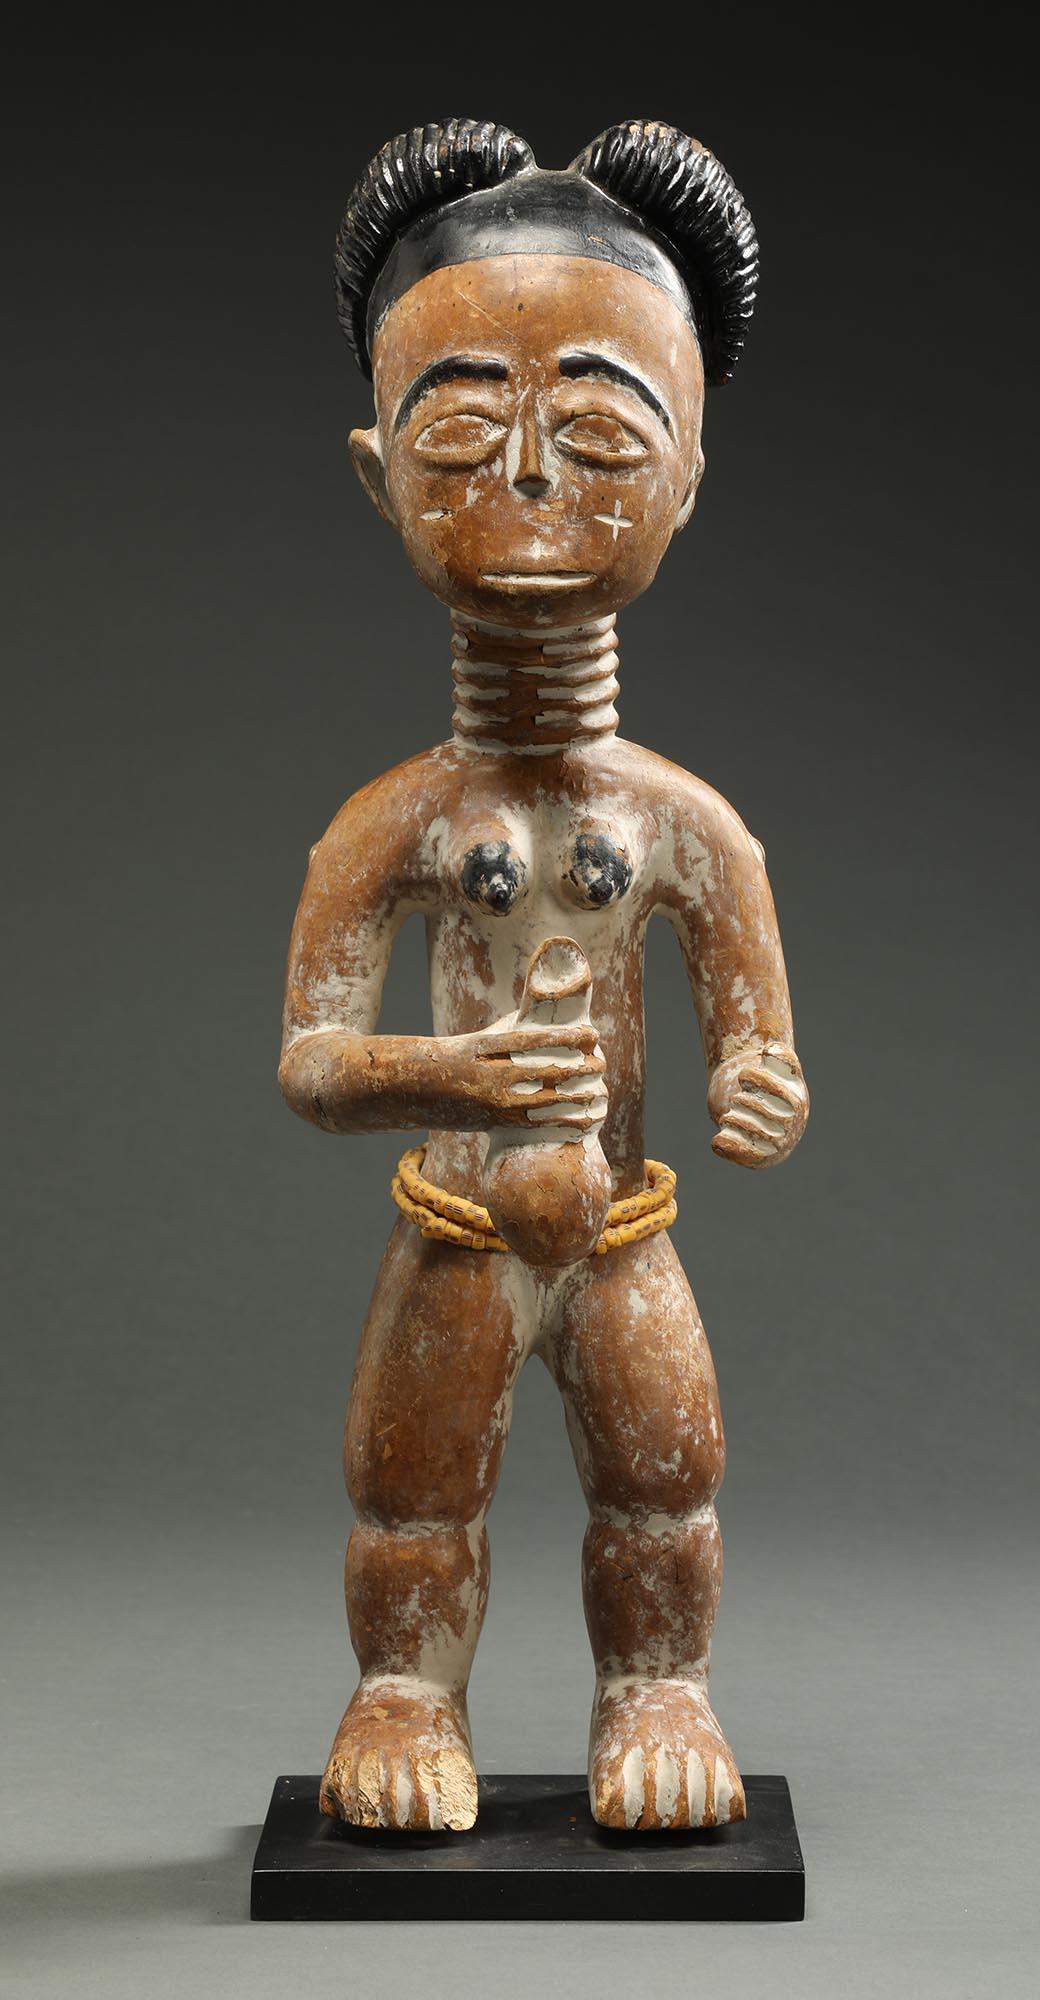 Akan, Ghana, Schreinfigur, stehende weibliche Figur mit schwarzem Haar und Details, Reste von weißem Pigment, mit ausgestreckten Armen, die eine Flasche halten, mit individuellem Metallsockel. Wahrscheinlich handelt es sich um eine Figur, die einen